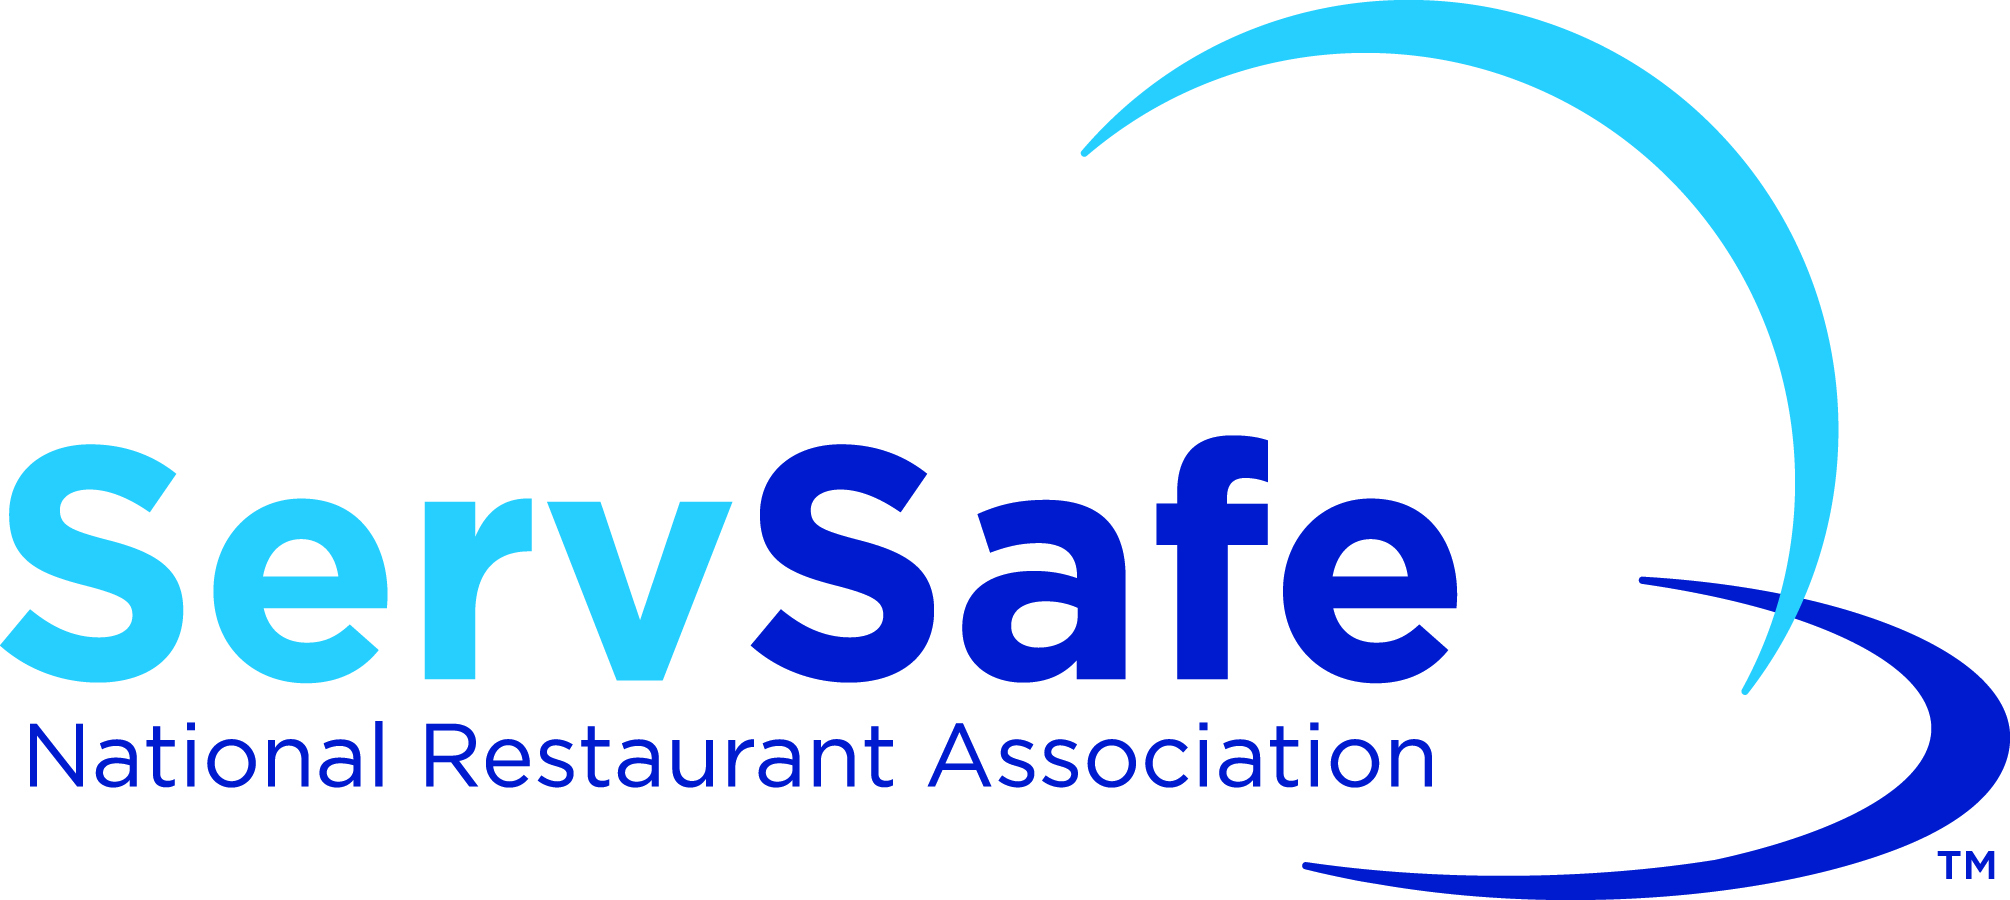 serve safe logo